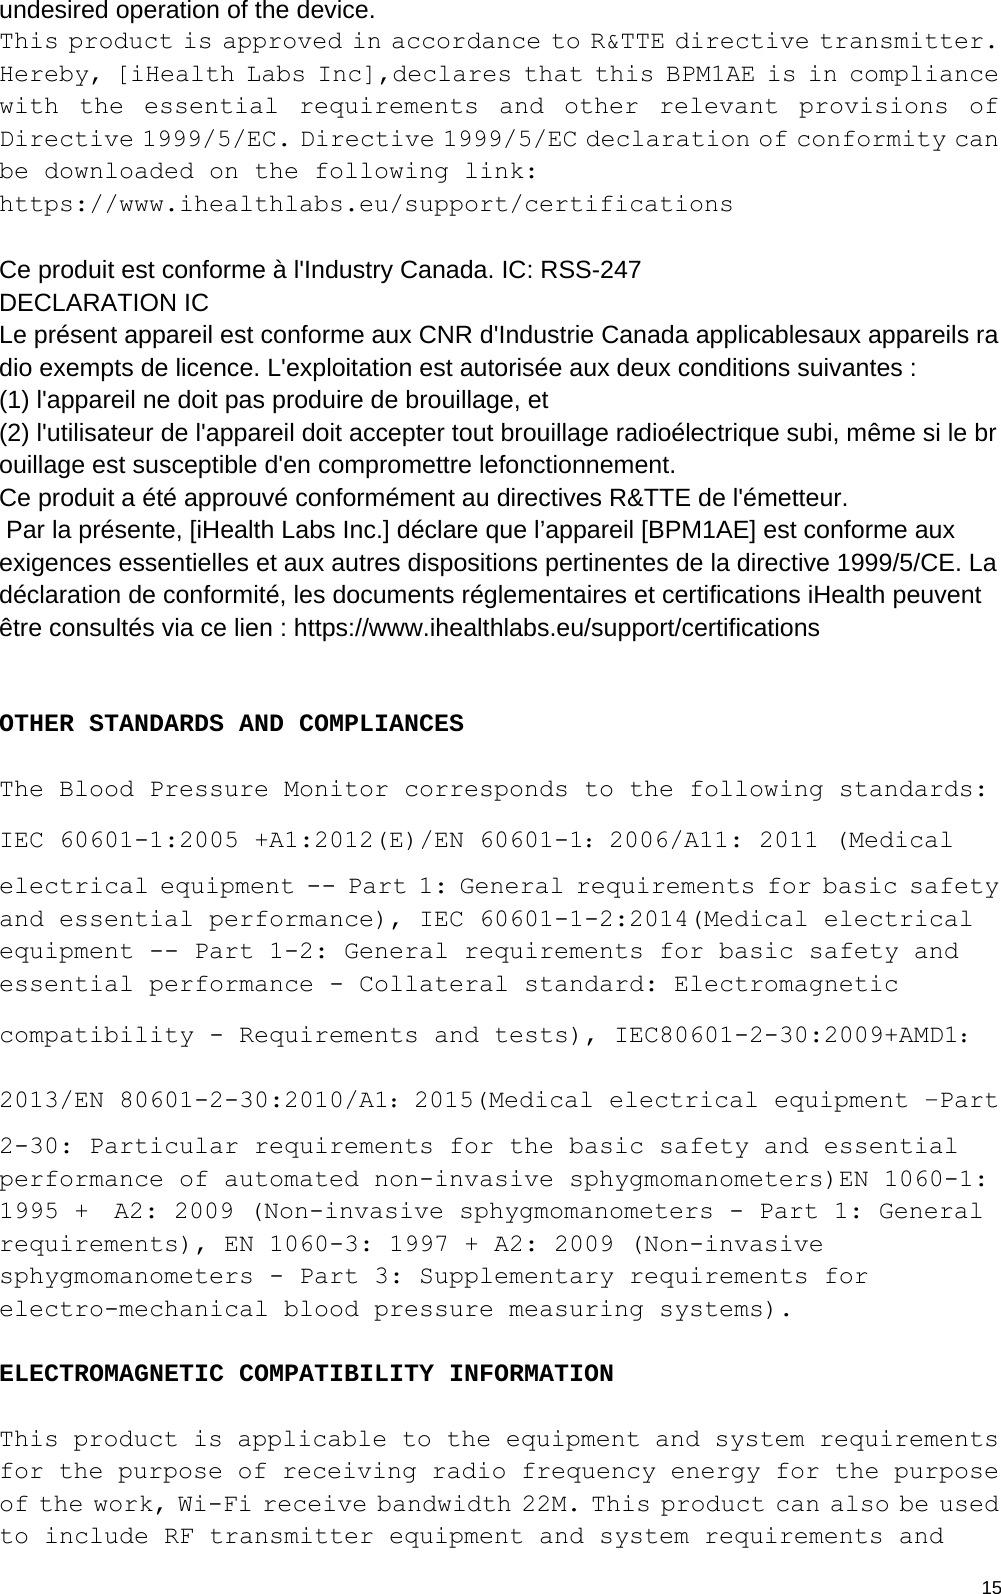  15undesired operation of the device. This product is approved in accordance to R&amp;TTE directive transmitter. Hereby, [iHealth Labs Inc],declares that this BPM1AE is in compliance with the essential requirements and other relevant provisions of Directive 1999/5/EC. Directive 1999/5/EC declaration of conformity can be downloaded on the following link: https://www.ihealthlabs.eu/support/certifications  Ce produit est conforme à l&apos;Industry Canada. IC: RSS-247 DECLARATION IC Le présent appareil est conforme aux CNR d&apos;Industrie Canada applicablesaux appareils radio exempts de licence. L&apos;exploitation est autorisée aux deux conditions suivantes :  (1) l&apos;appareil ne doit pas produire de brouillage, et  (2) l&apos;utilisateur de l&apos;appareil doit accepter tout brouillage radioélectrique subi, même si le brouillage est susceptible d&apos;en compromettre lefonctionnement. Ce produit a été approuvé conformément au directives R&amp;TTE de l&apos;émetteur.  Par la présente, [iHealth Labs Inc.] déclare que l’appareil [BPM1AE] est conforme aux exigences essentielles et aux autres dispositions pertinentes de la directive 1999/5/CE. La déclaration de conformité, les documents réglementaires et certifications iHealth peuvent être consultés via ce lien : https://www.ihealthlabs.eu/support/certifications   OTHER STANDARDS AND COMPLIANCES  The Blood Pressure Monitor corresponds to the following standards:   IEC 60601-1:2005 +A1:2012(E)/EN 60601-1：2006/A11: 2011 (Medical electrical equipment -- Part 1: General requirements for basic safety and essential performance), IEC 60601-1-2:2014(Medical electrical equipment -- Part 1-2: General requirements for basic safety and essential performance - Collateral standard: Electromagnetic compatibility - Requirements and tests), IEC80601-2-30:2009+AMD1：2013/EN 80601-2-30:2010/A1：2015(Medical electrical equipment –Part 2-30: Particular requirements for the basic safety and essential performance of automated non-invasive sphygmomanometers)EN 1060-1: 1995 +  A2: 2009 (Non-invasive sphygmomanometers - Part 1: General requirements), EN 1060-3: 1997 + A2: 2009 (Non-invasive sphygmomanometers - Part 3: Supplementary requirements for electro-mechanical blood pressure measuring systems).  ELECTROMAGNETIC COMPATIBILITY INFORMATION  This product is applicable to the equipment and system requirements for the purpose of receiving radio frequency energy for the purpose of the work, Wi-Fi receive bandwidth 22M. This product can also be used to include RF transmitter equipment and system requirements and 